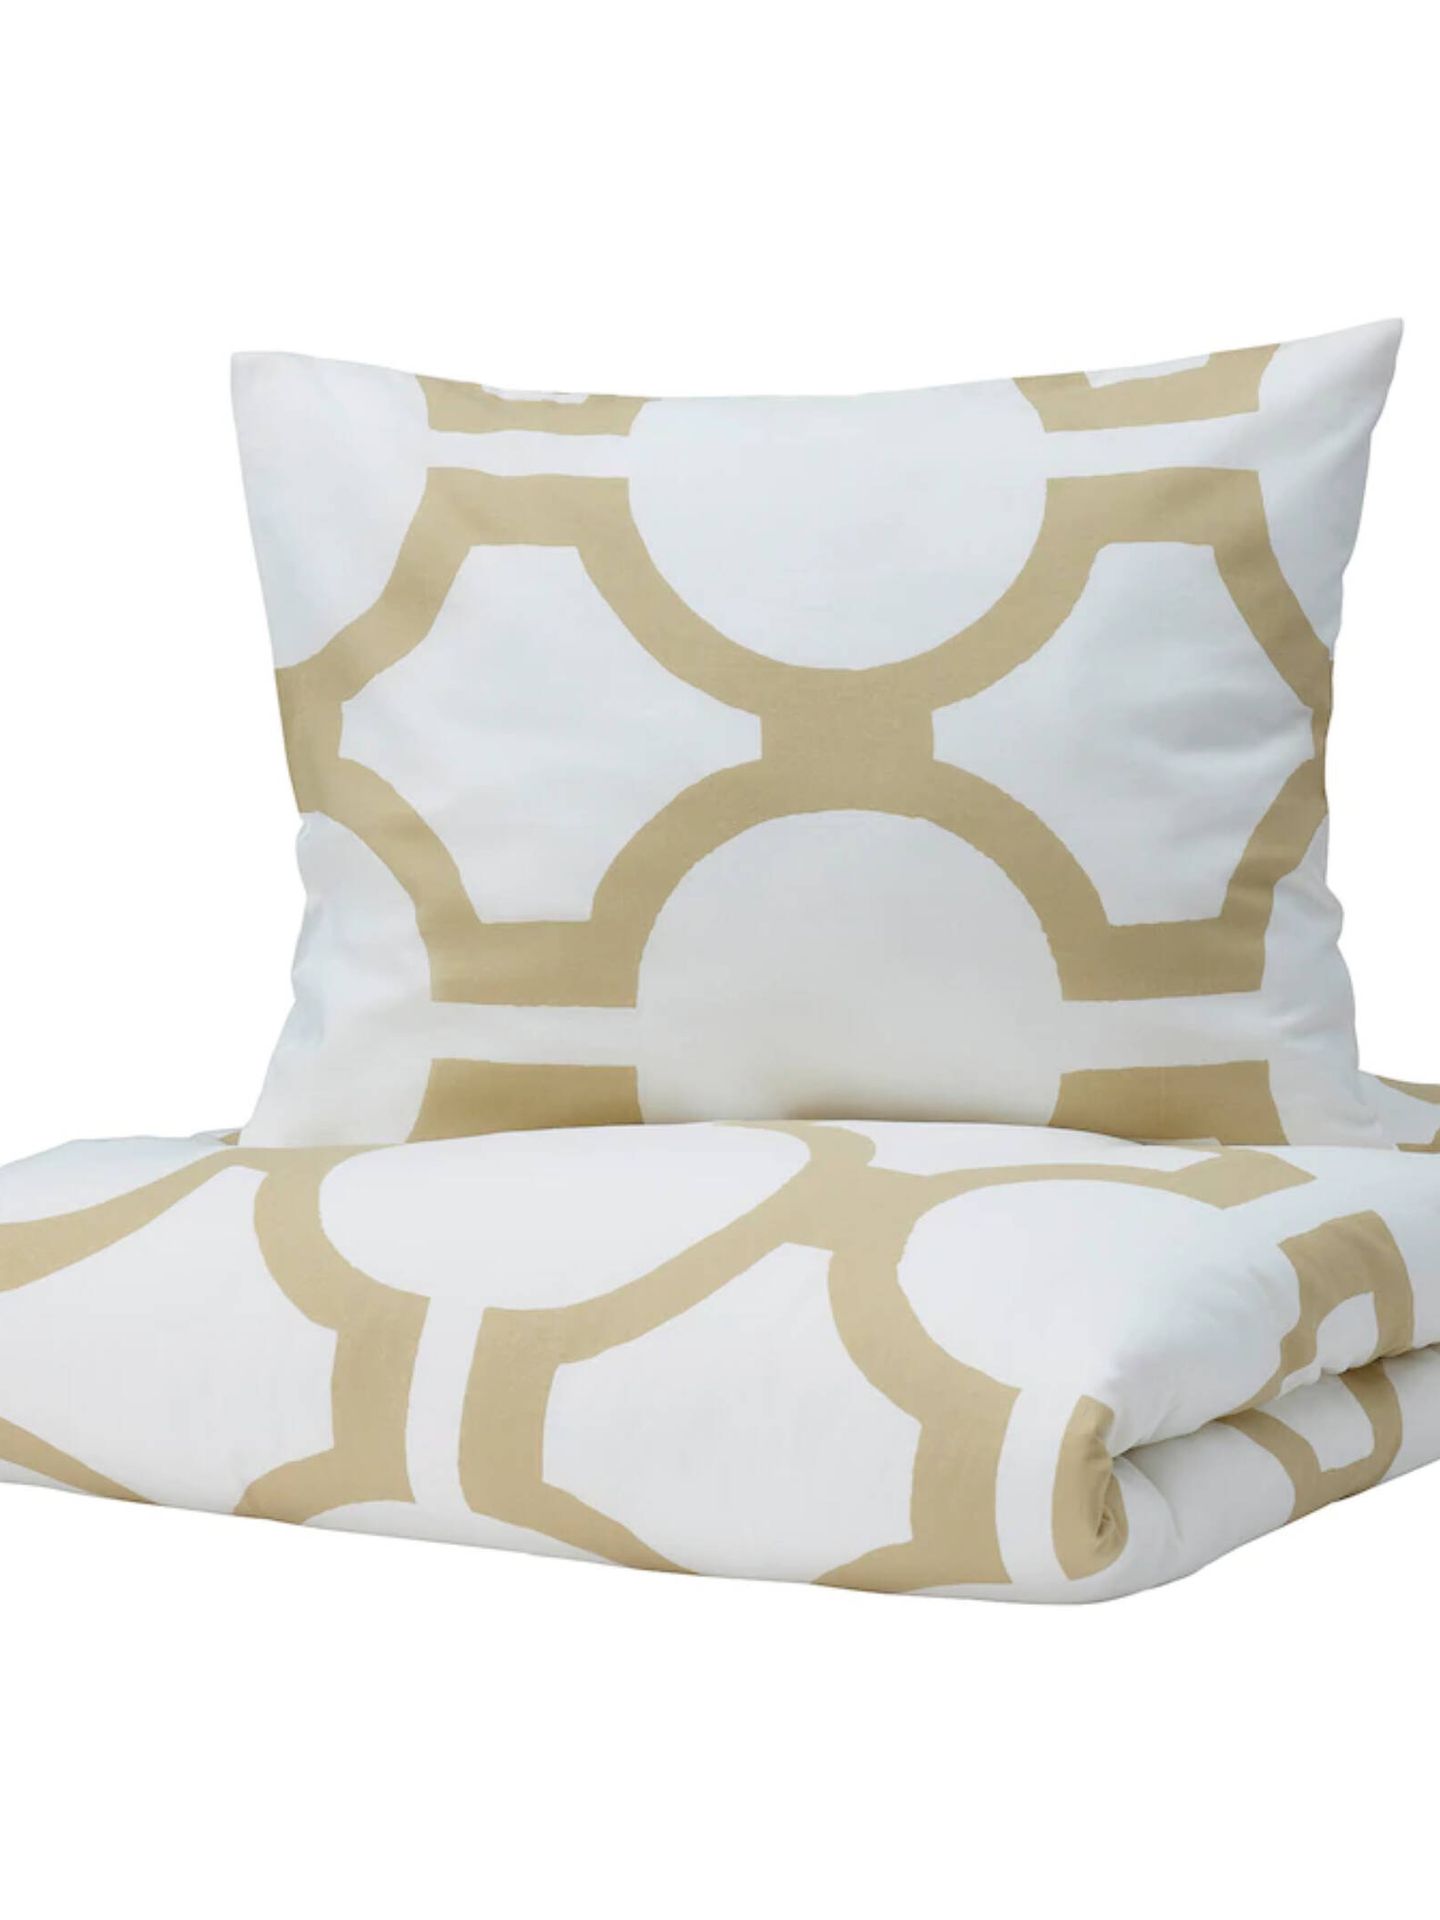 Prepara tu dormitorio para el frío con estas novedades en decoración. (Cortesía/Ikea)